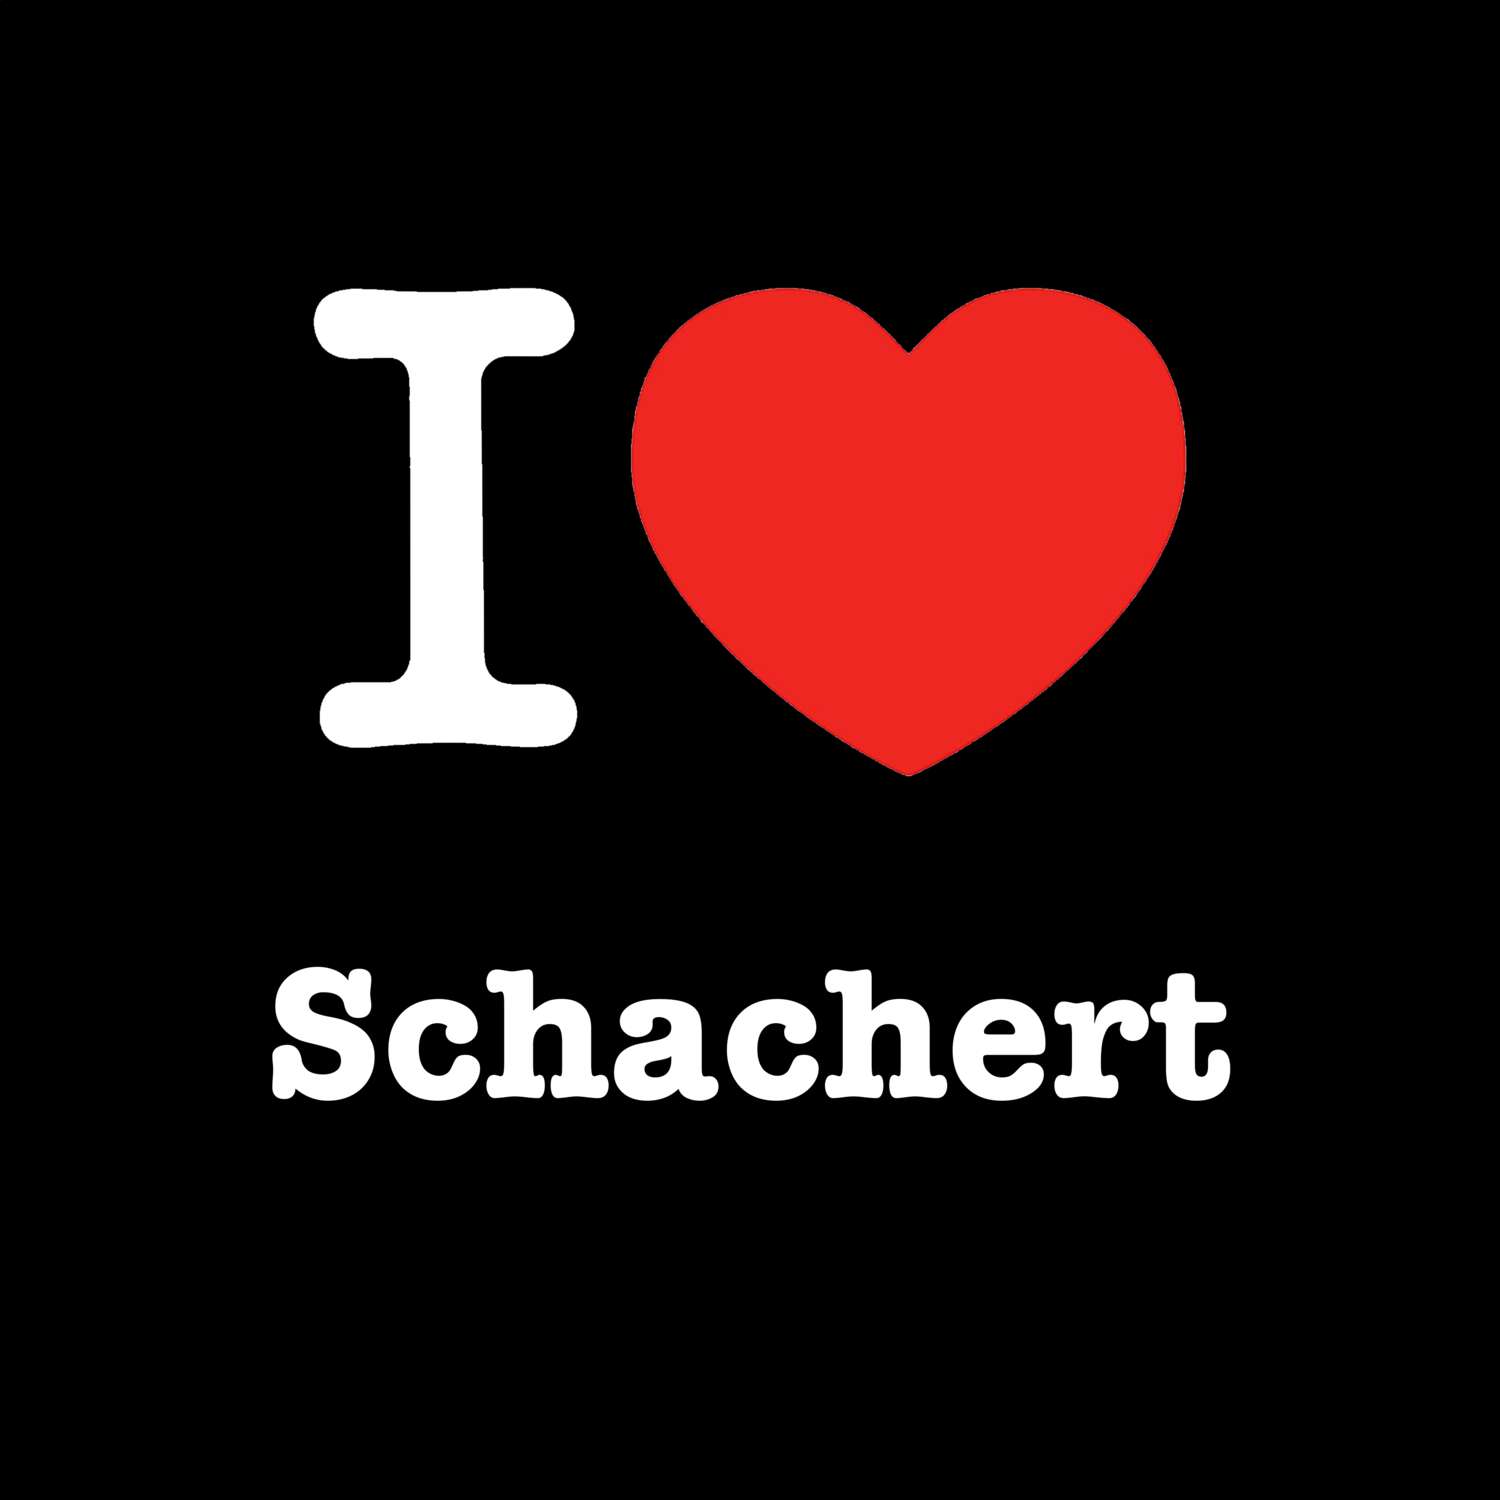 Schachert T-Shirt »I love«